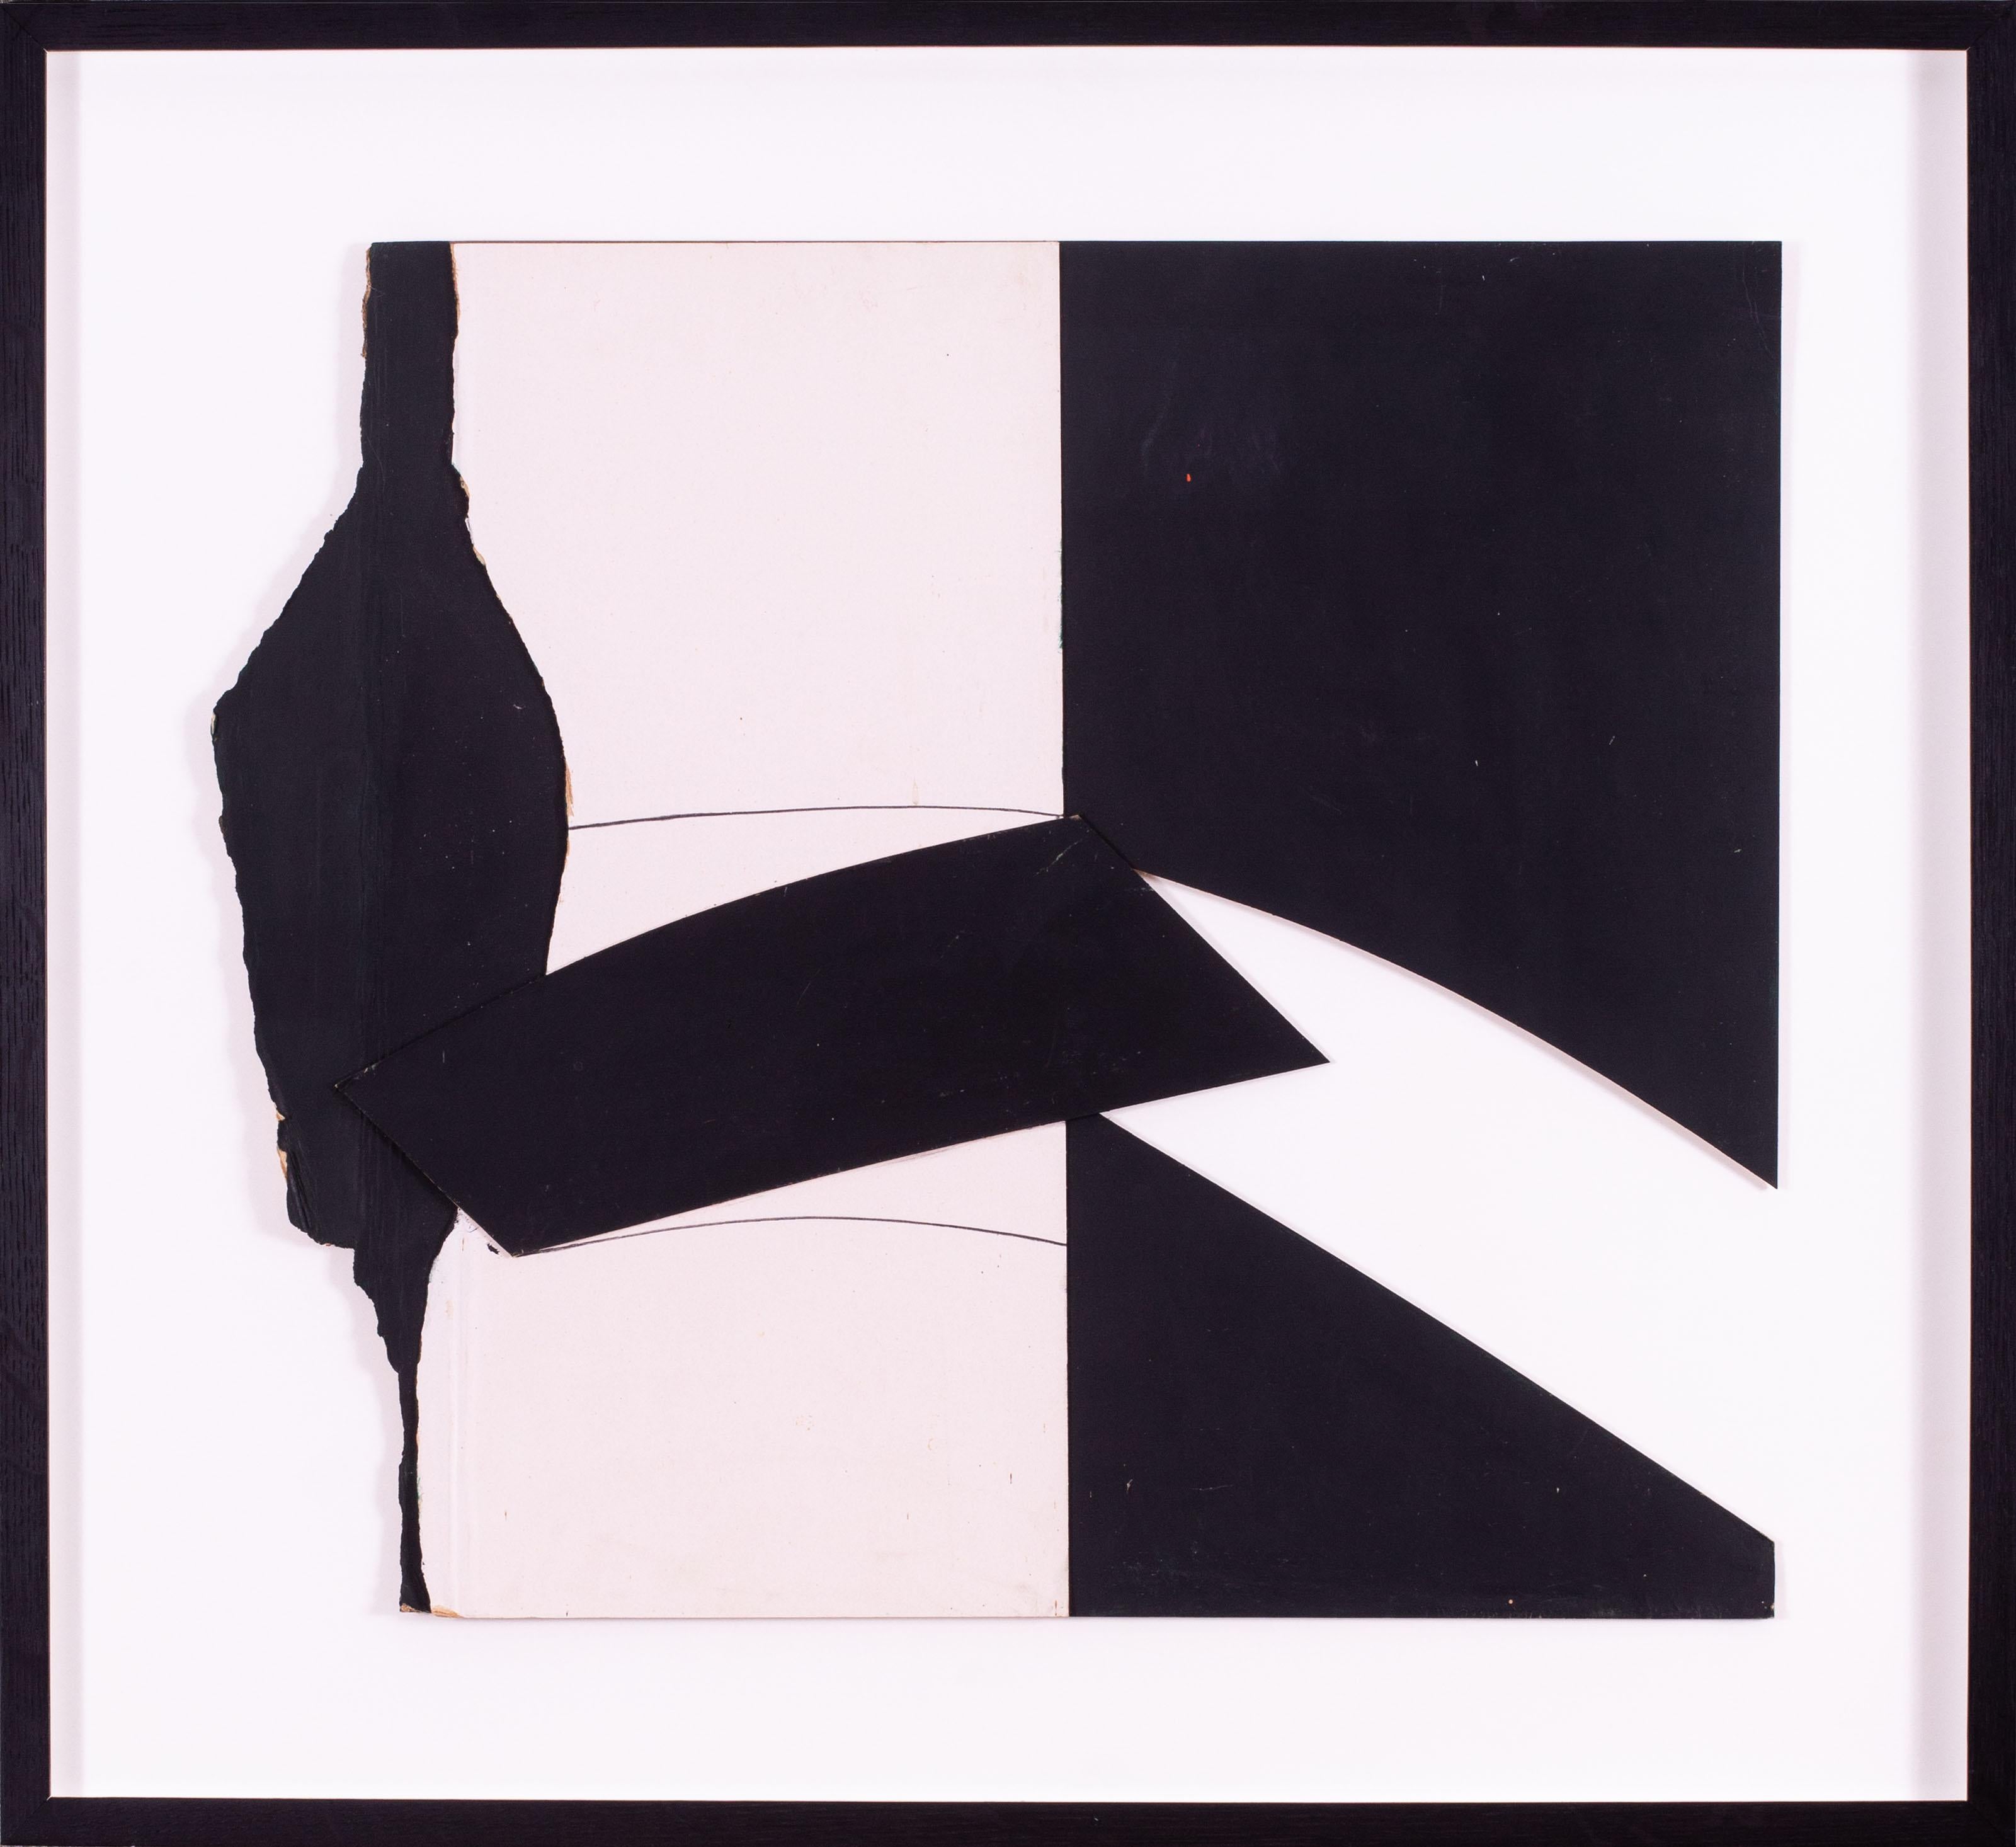 Eine sehr auffällige und stilvolle Schwarz-Weiß-Collage aus den 1970er Jahren des bekannten St. Ives-Künstlers Trevor Bell.

Die Einzelheiten der Arbeit sind wie folgtS:

TREVOR BELL (BRITISCH, 1930-2017)
SLIDE
rückseitig betitelt, datiert und